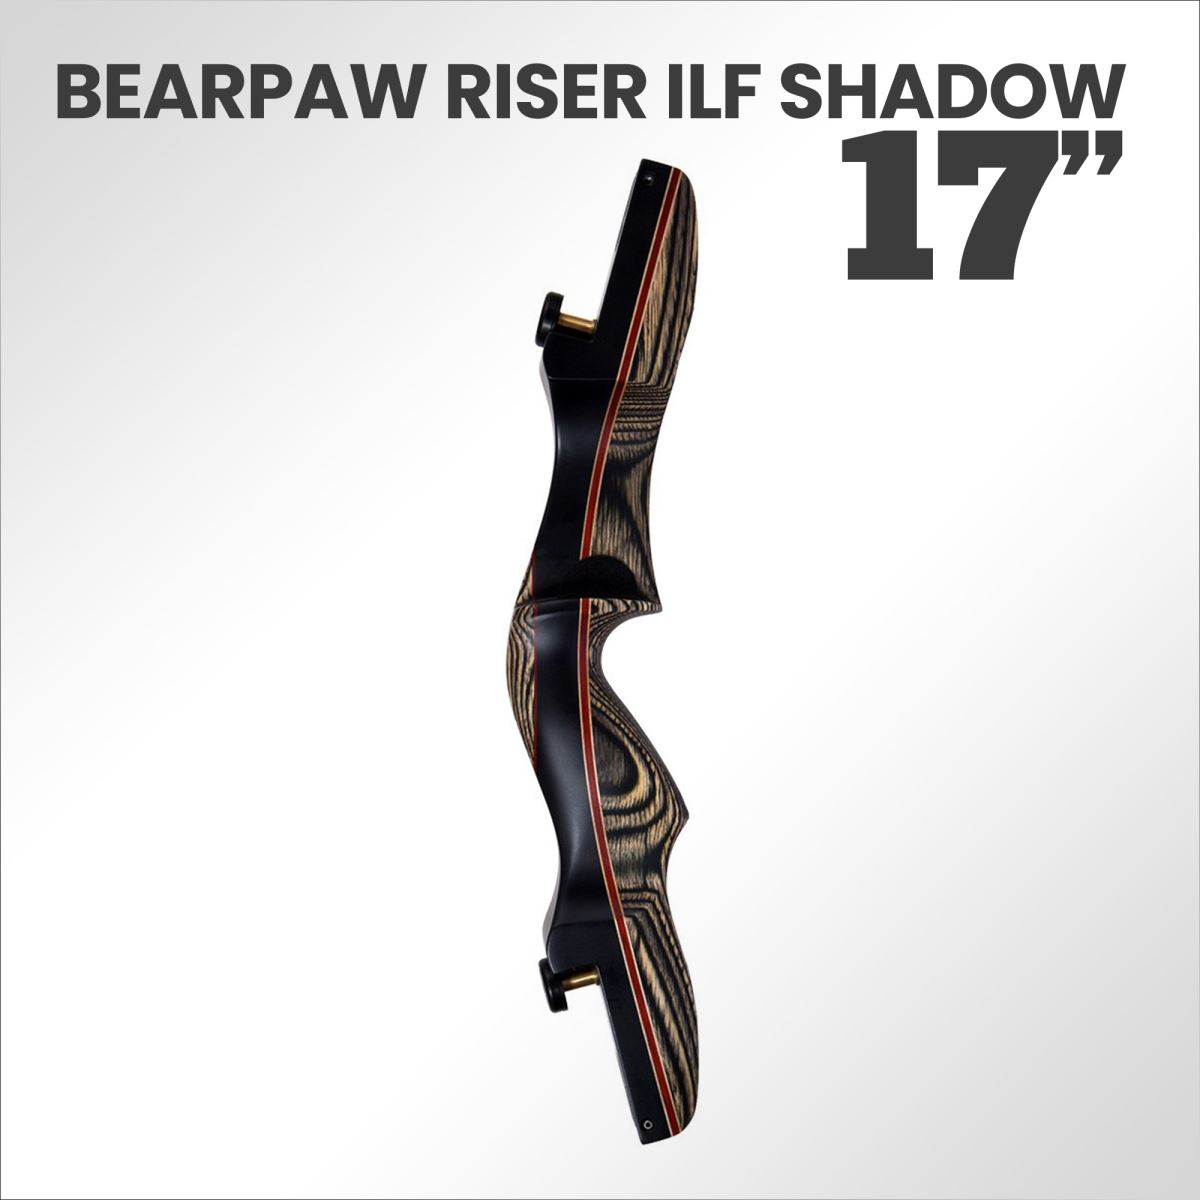 Nuovo Riser Bearpaw in legno, ottimo per il tiro tradizionale con flettenti ILF. Scopri di più